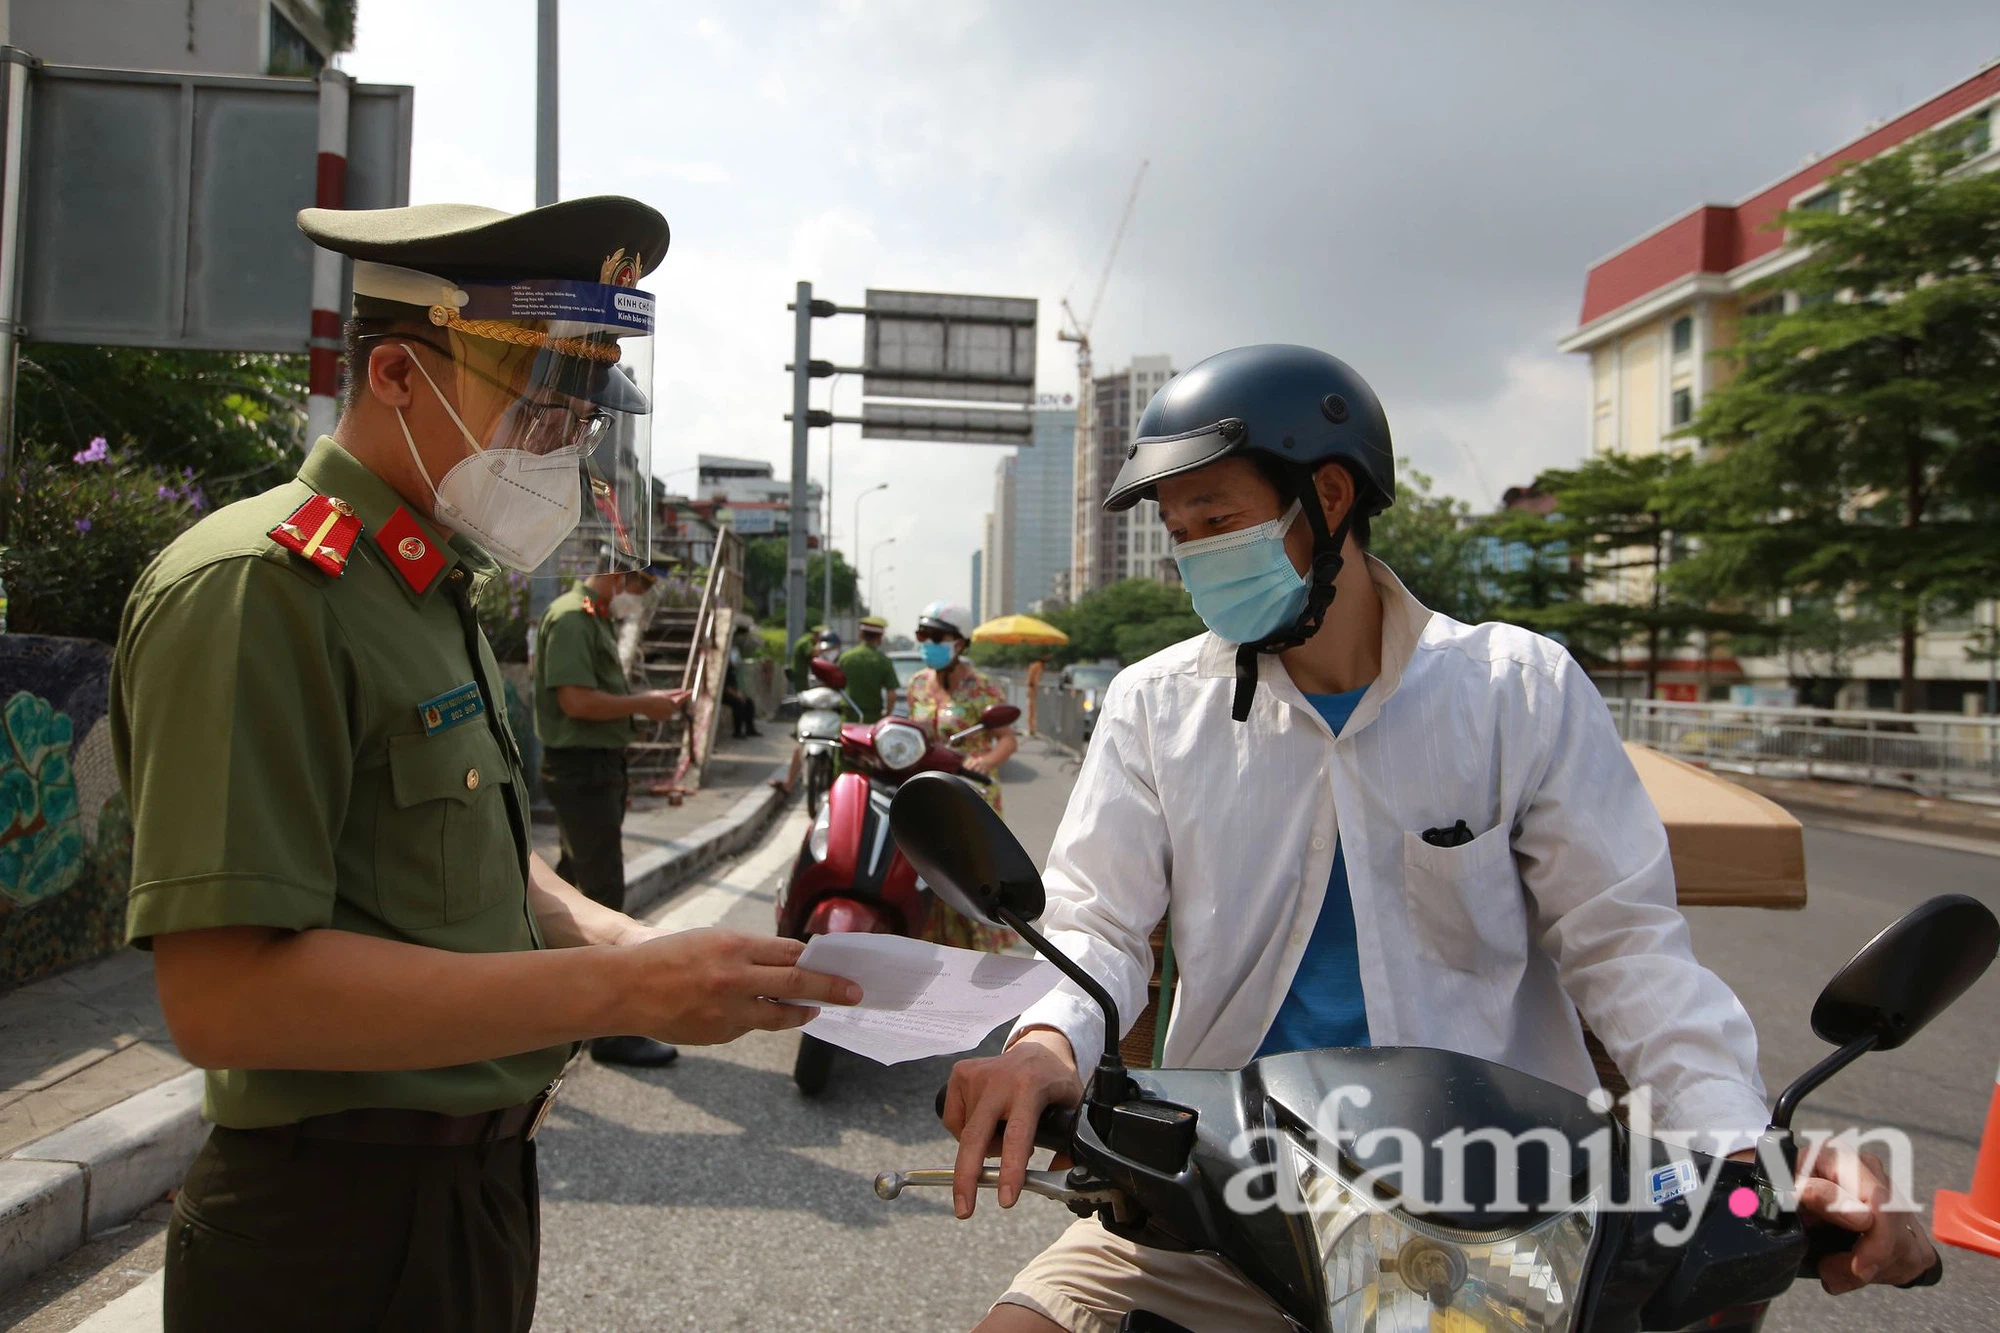 NÓNG: Hà Nội cho phép người dân tiếp tục sử dụng giấy đi đường cũ - Ảnh 1.